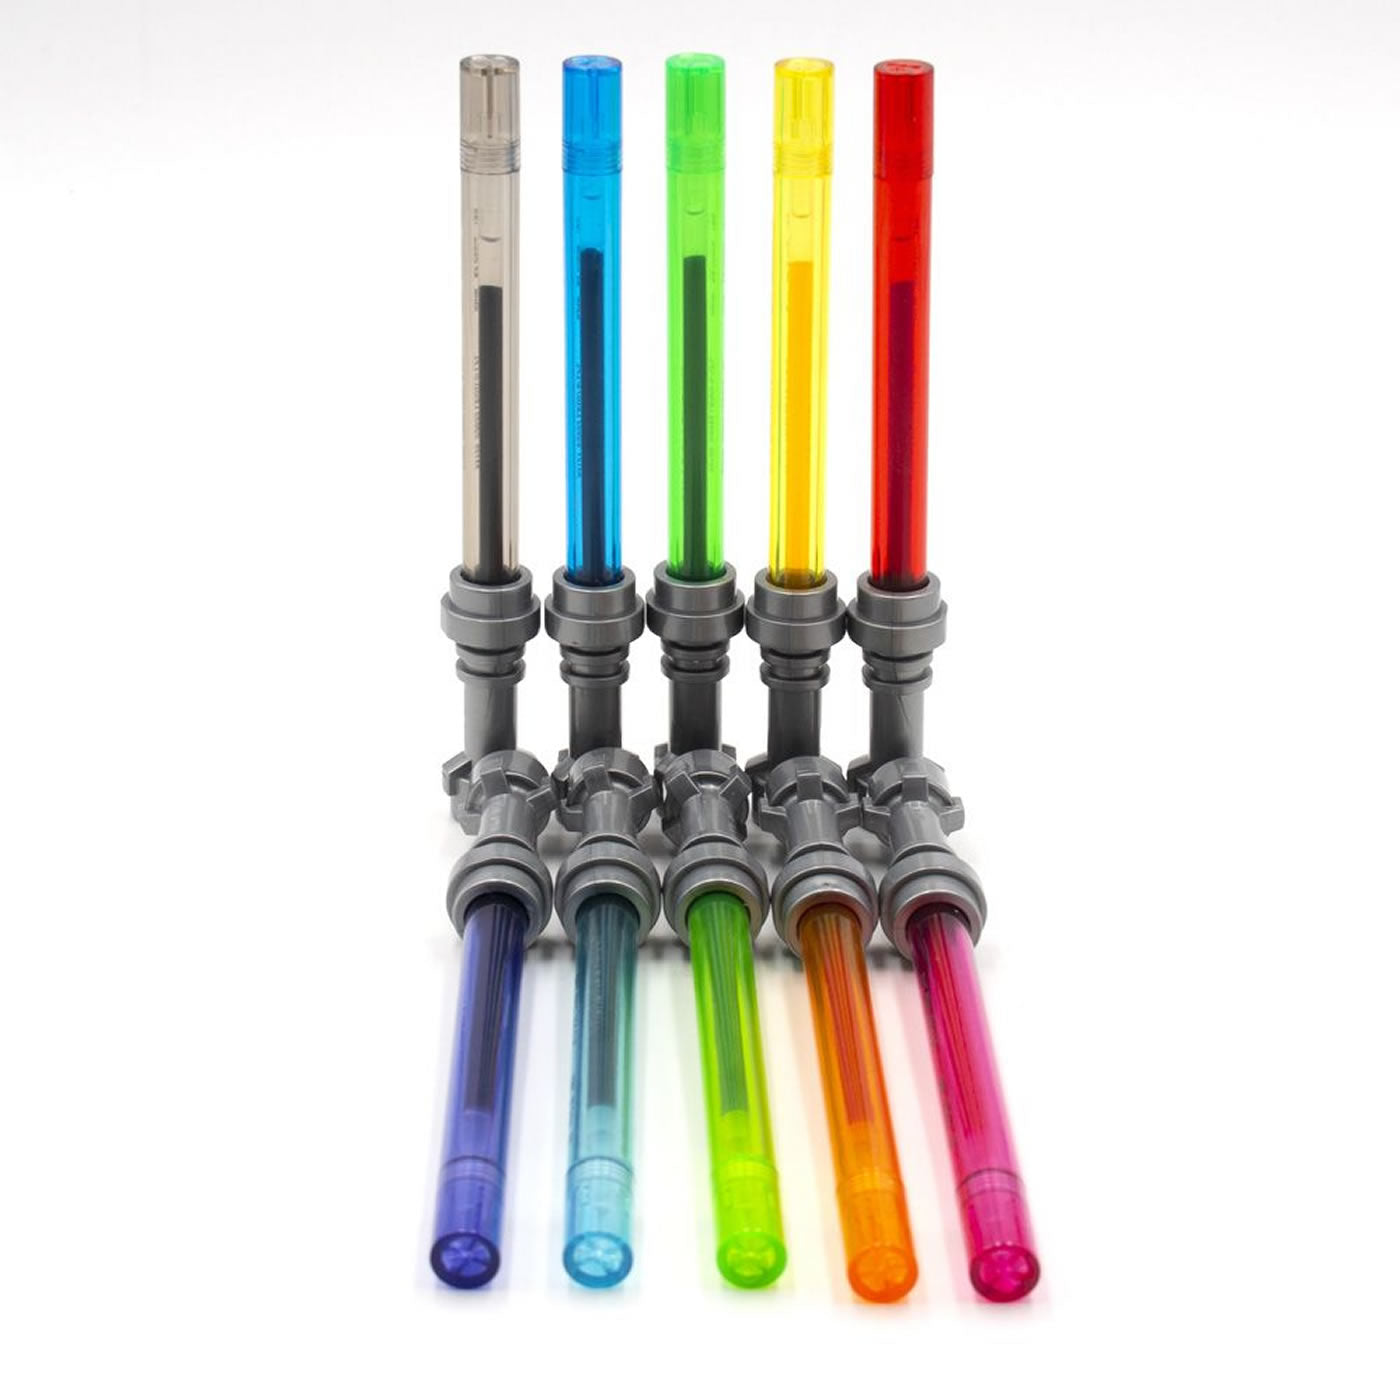 Lego Star Wars Lightsaber Gel Pen Multipack - Pack of 10